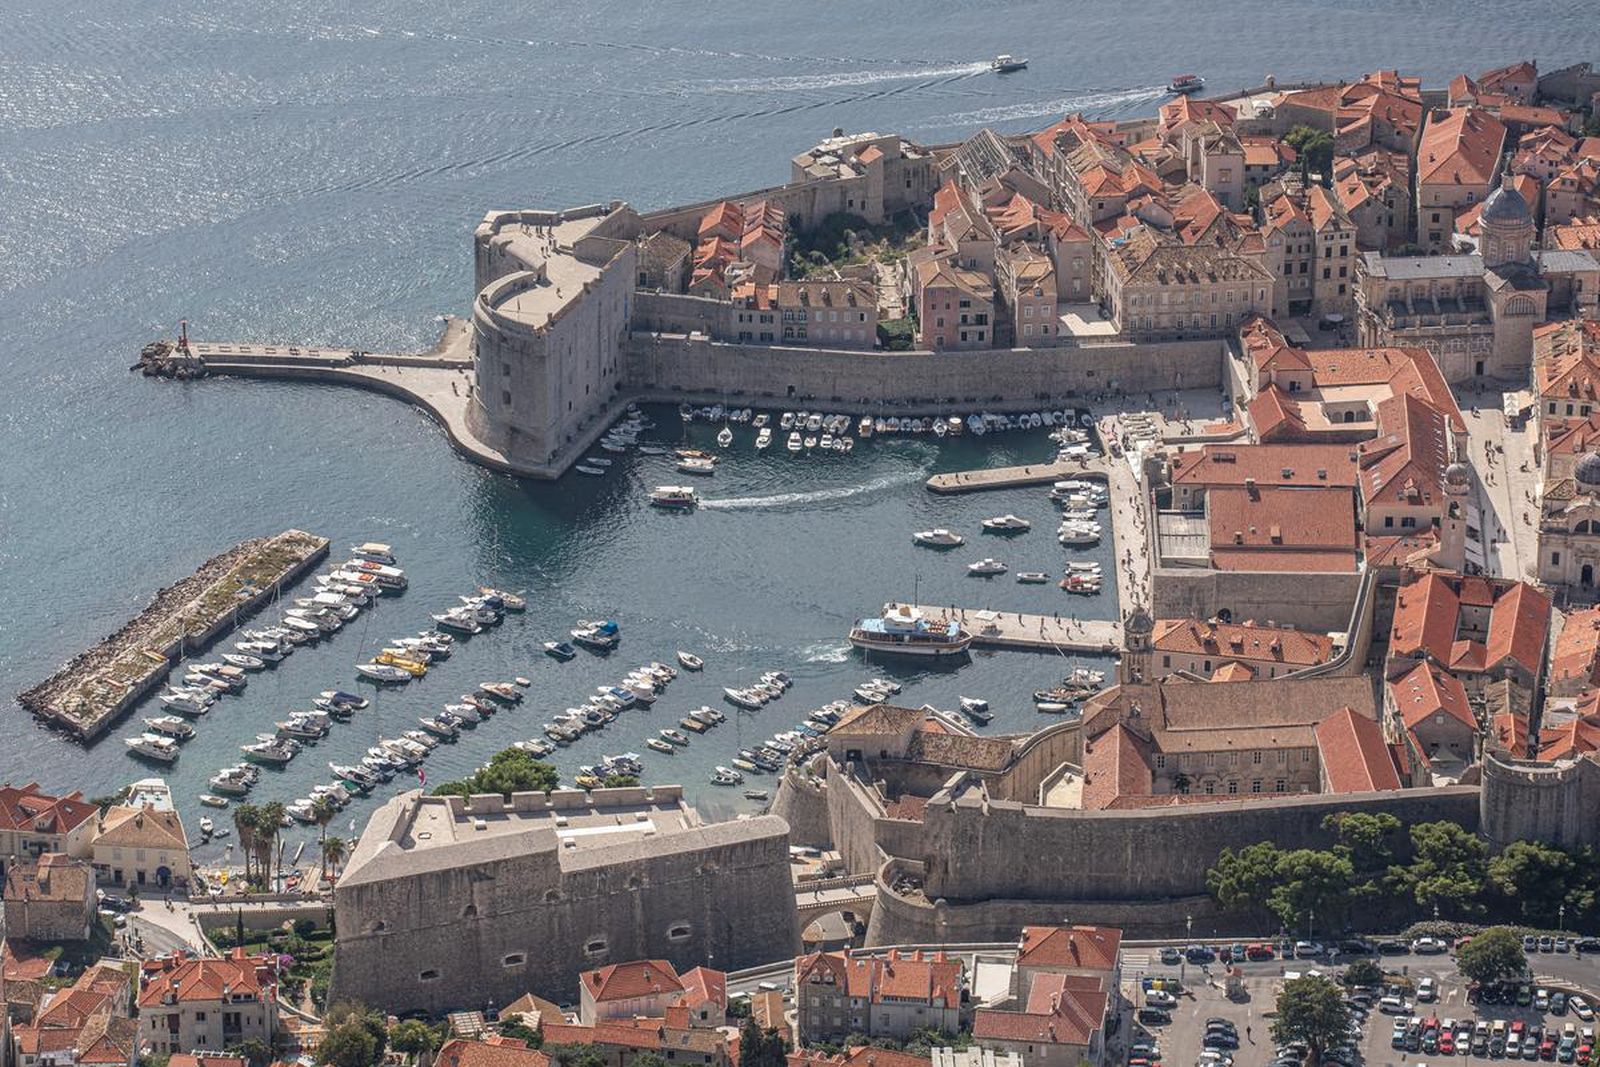 01.10.2021., Srdj, Dubrovnik - Pogled na dubrovacku staru jezgru.
Photo: Grgo Jelavic/PIXSELL